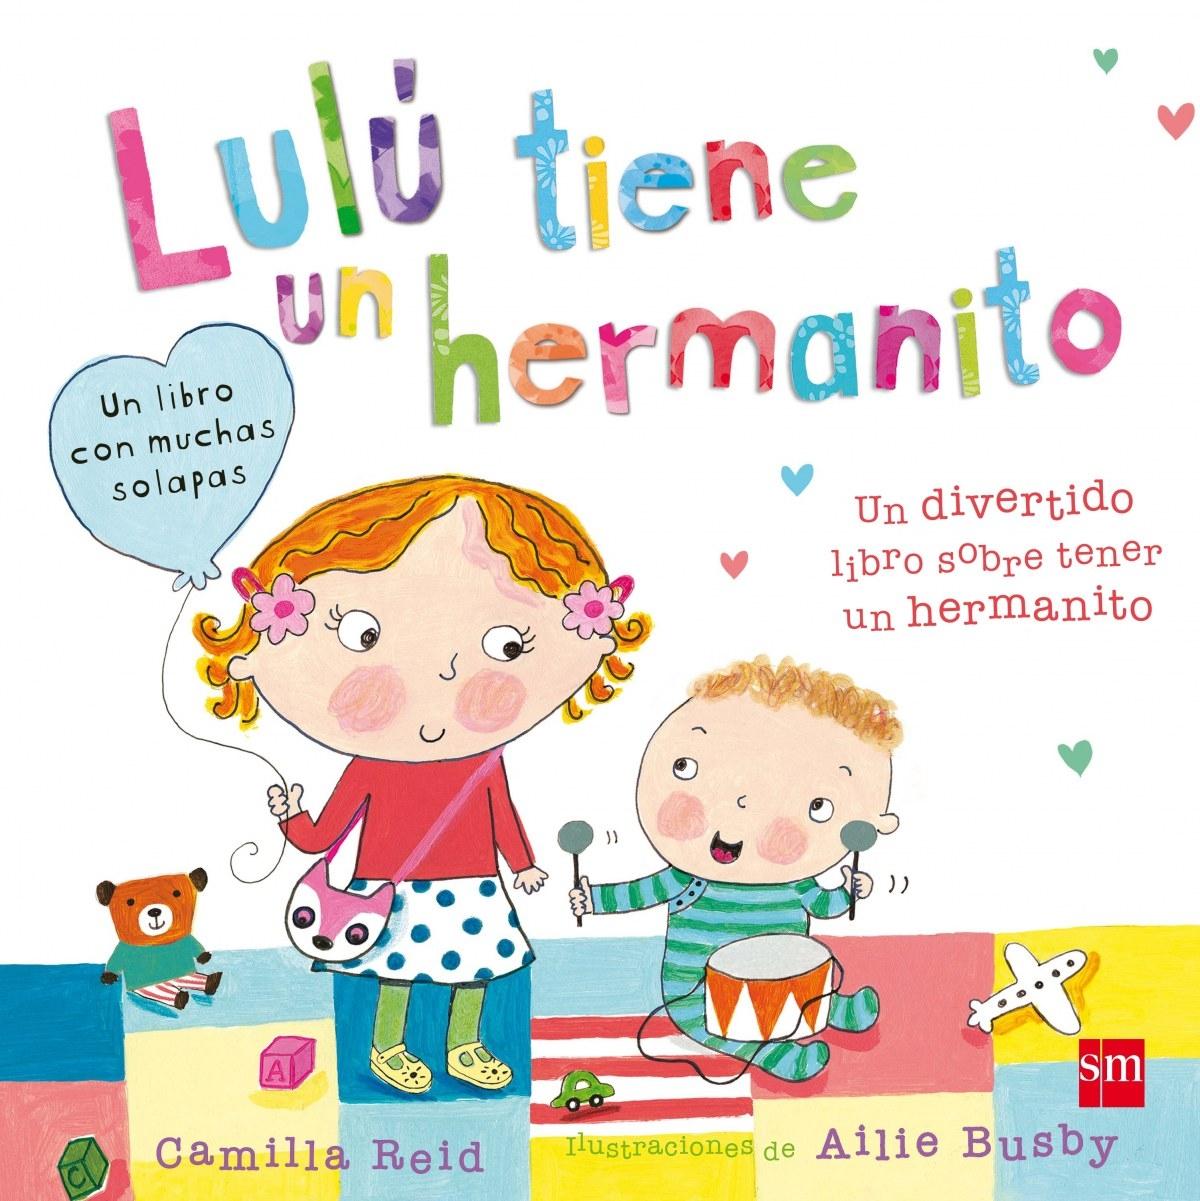 Lulú tiene un hermanito "Un divertido libro sobre tener un hermanito"